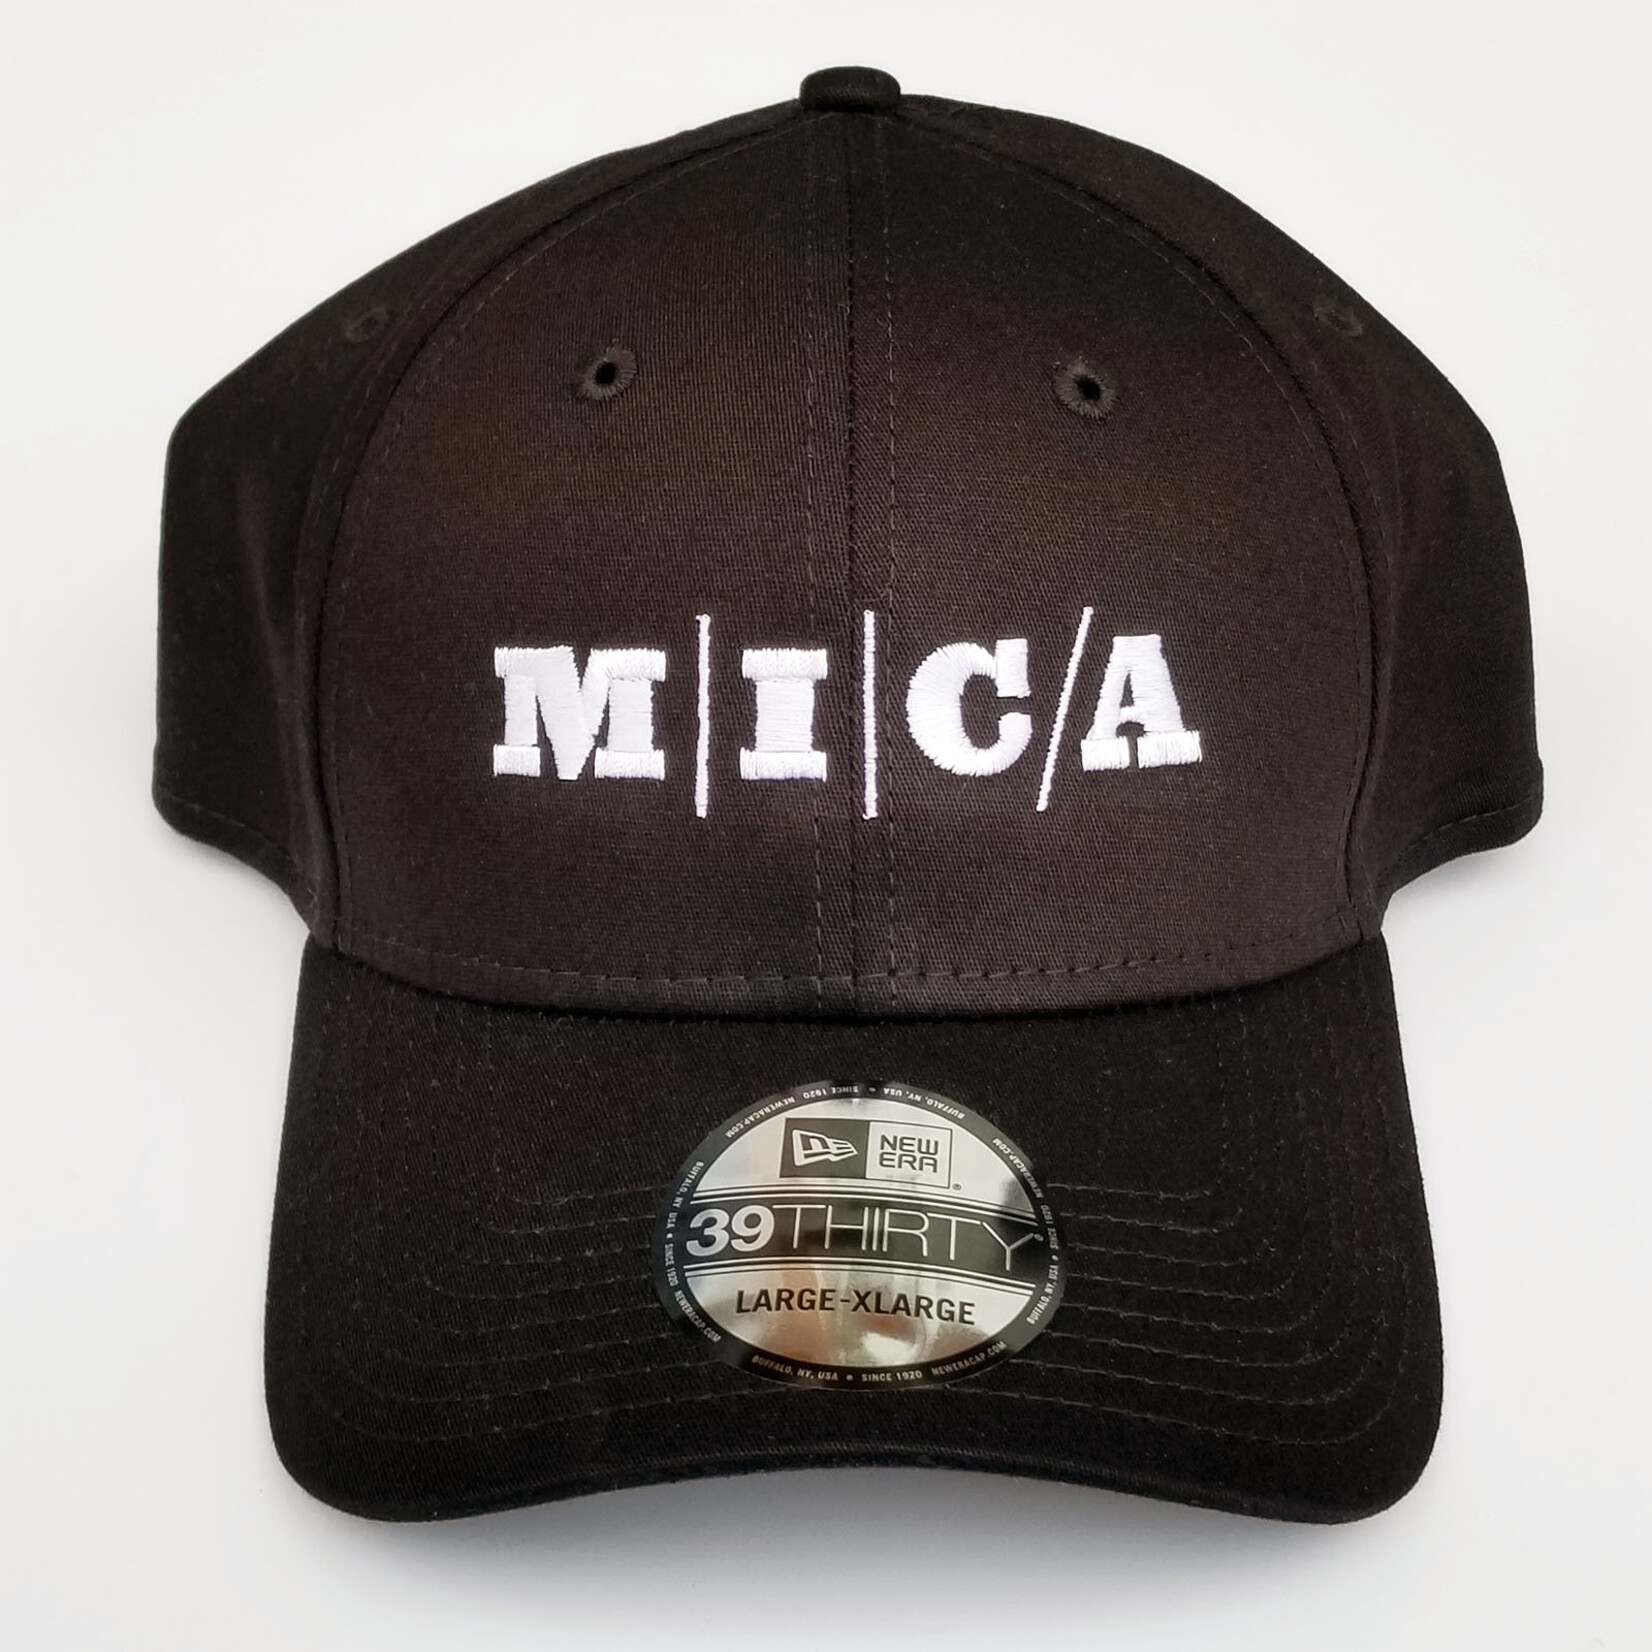 New Era MICA Flexfit 39Thirty Baseball Cap